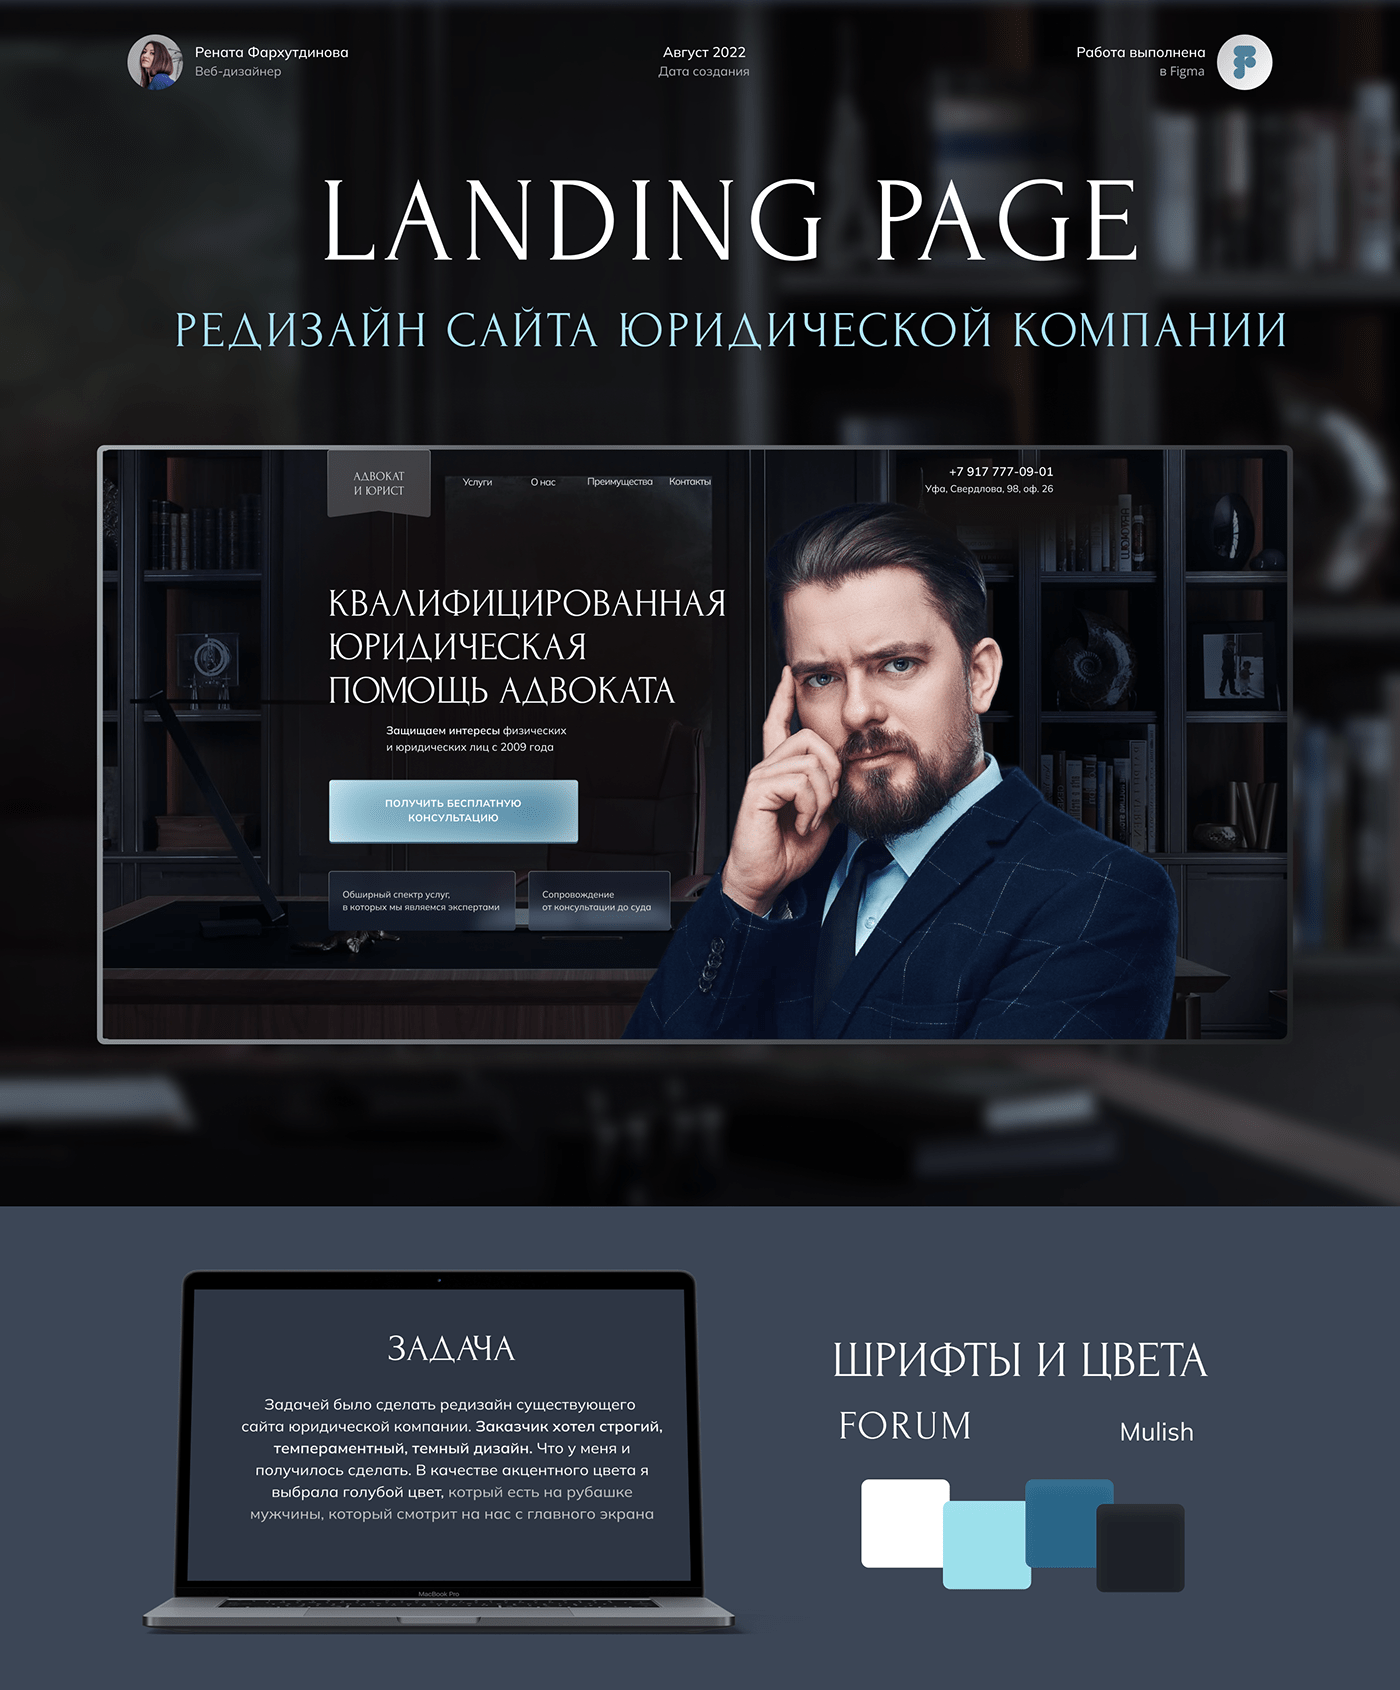 landing page Website Адвокат веб-дизайн дизайн сайта лендинг сайт юридическая компания юридические услуги Юрист